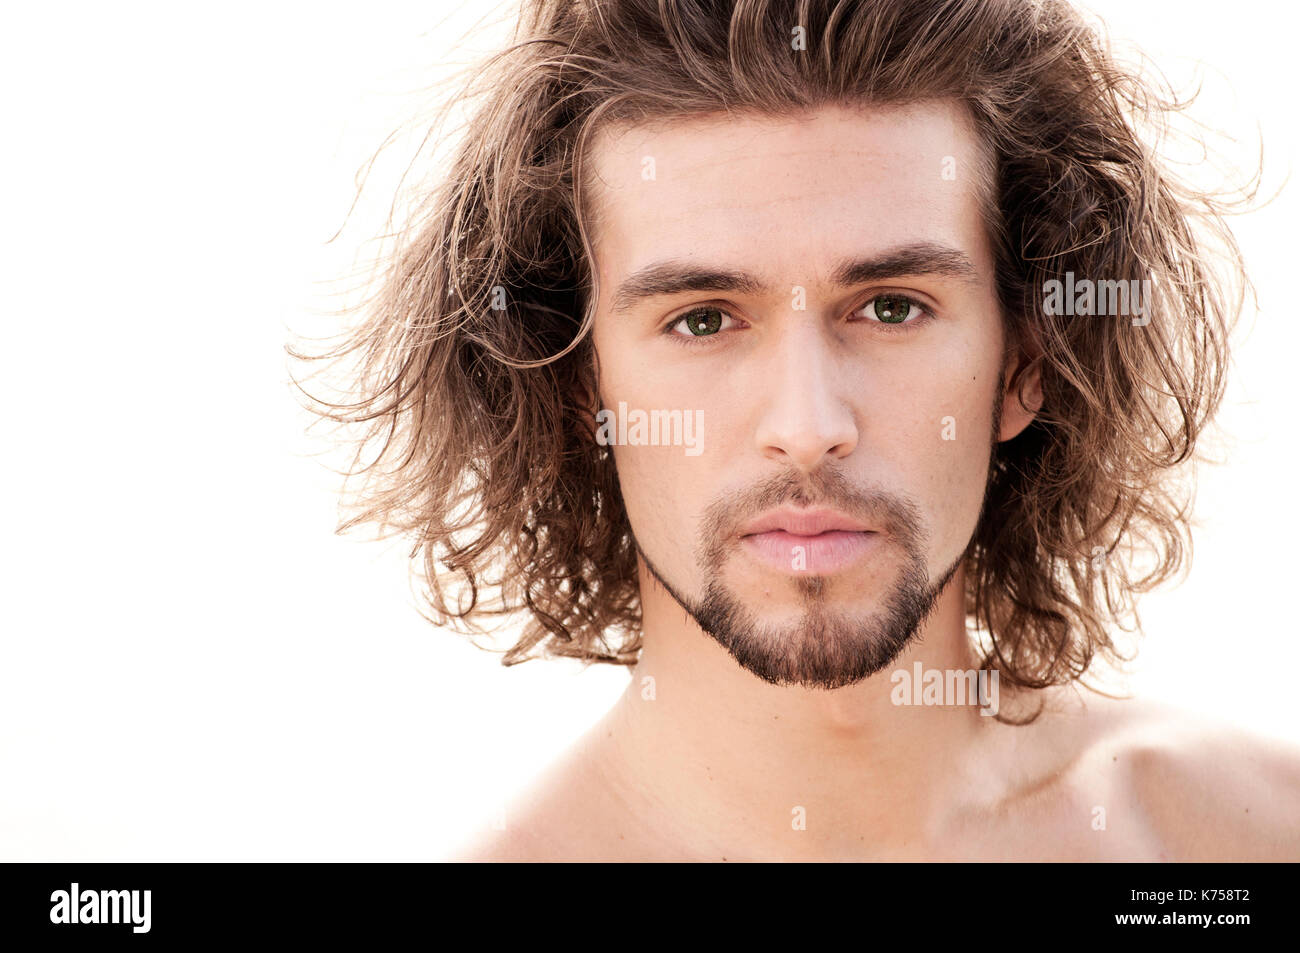 Italian men with long hair